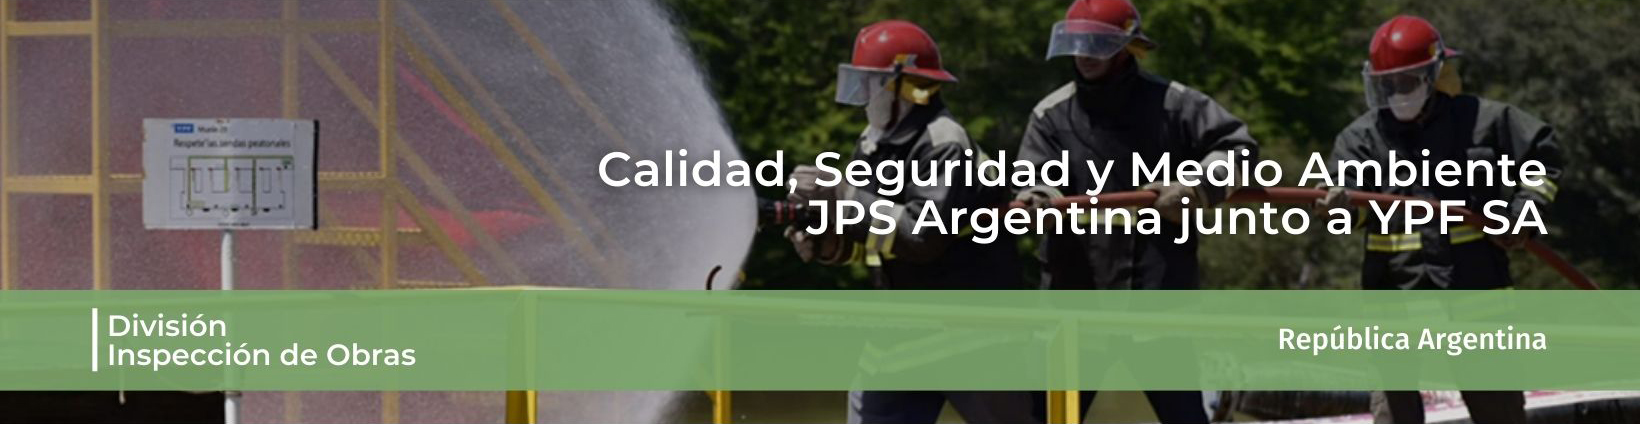 Calidad, Seguridad y Medio Ambiente. JPS Argentina junto a YPF SA